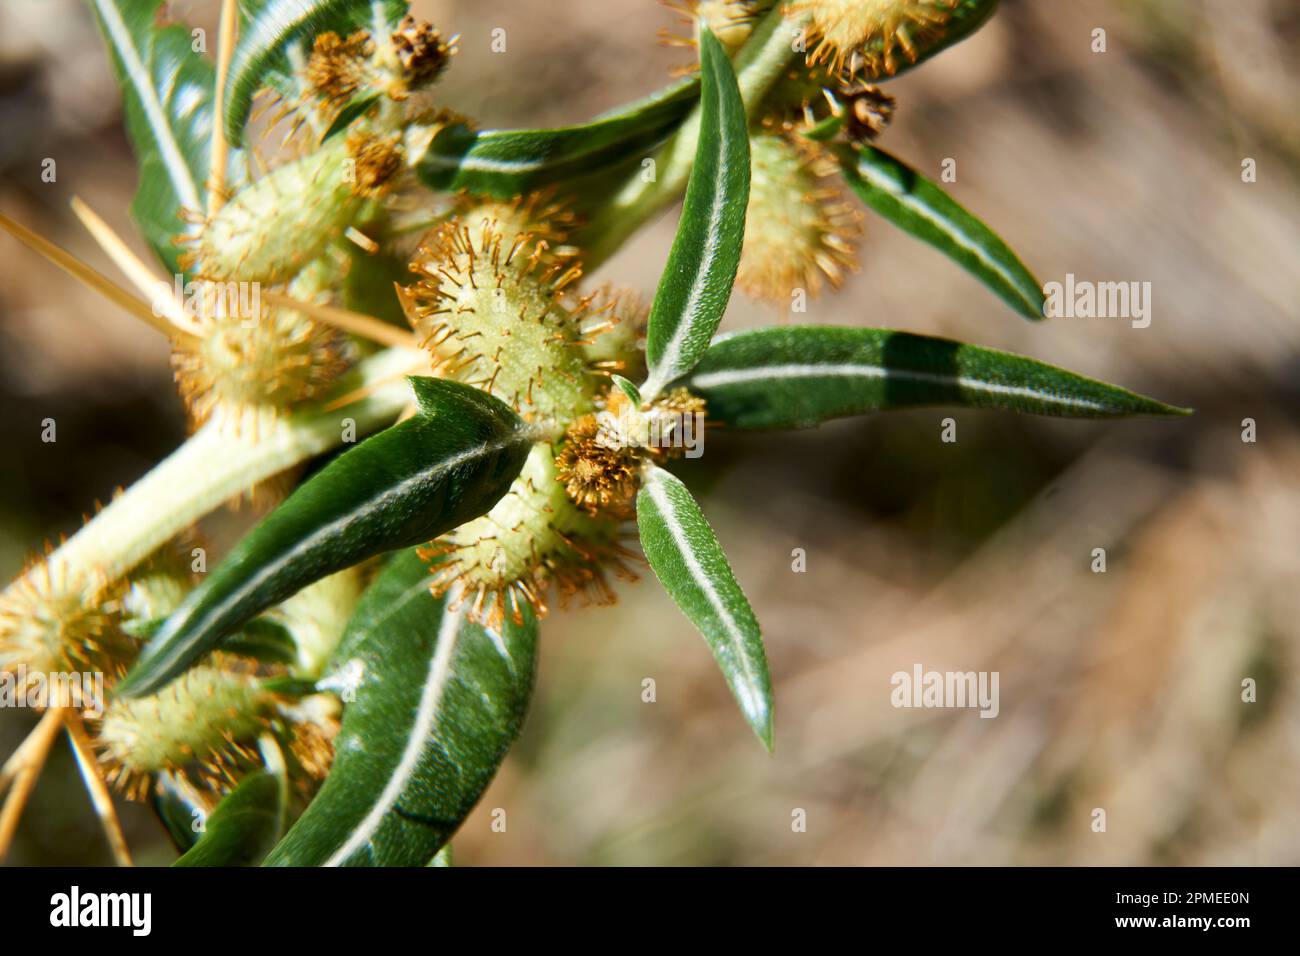 Images macro de Bathurst Burr ou de Xanthium spinosum, un ravageur de mauvaises herbes invasif introduit. Banque D'Images